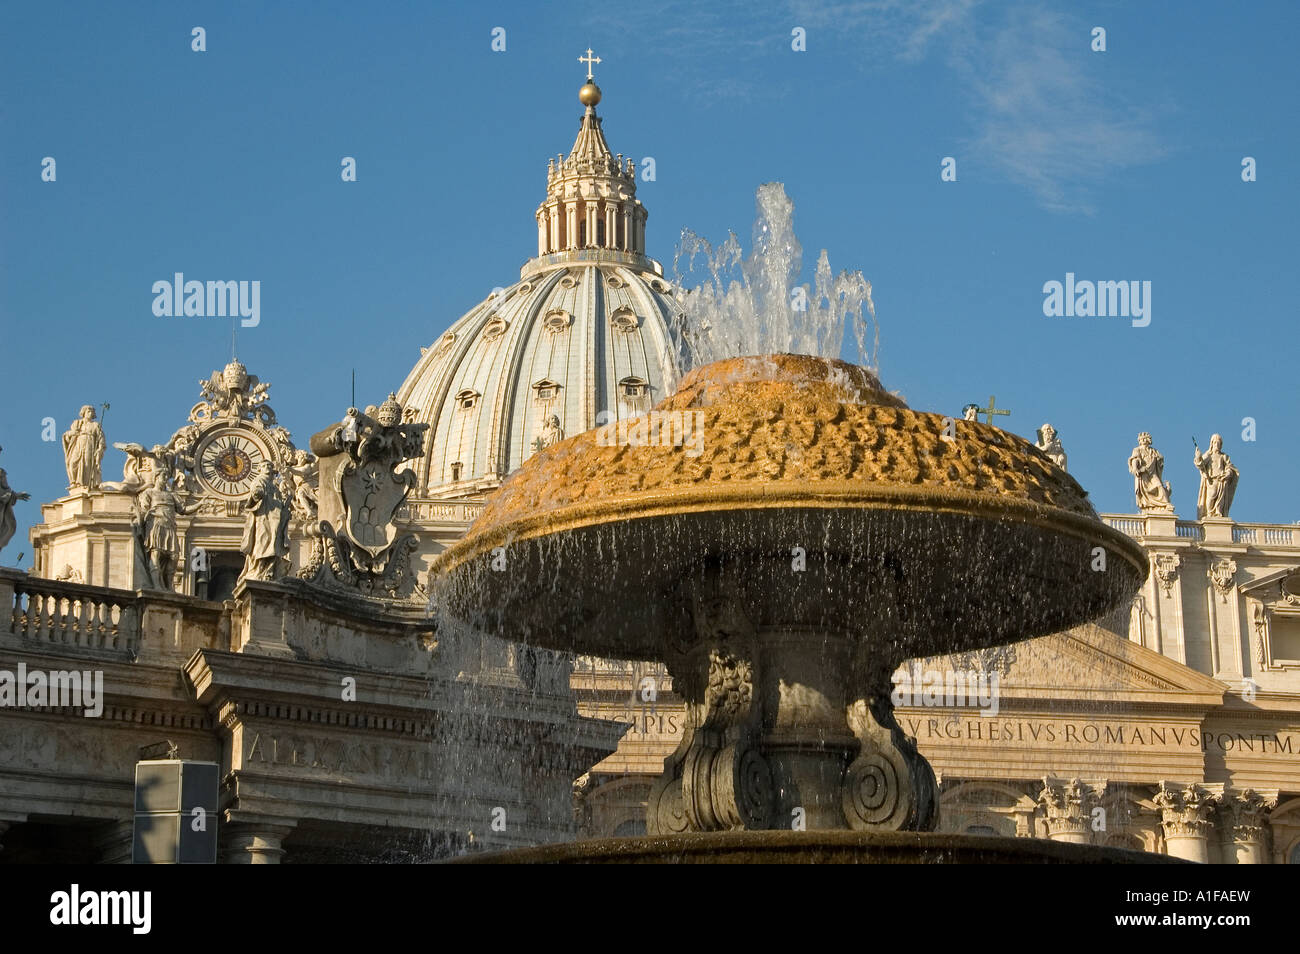 La fontaine sculptée de la Piazza San Pietro avec la basilique Saint-Pierre en arrière-plan, Vatican Rome Italie Banque D'Images